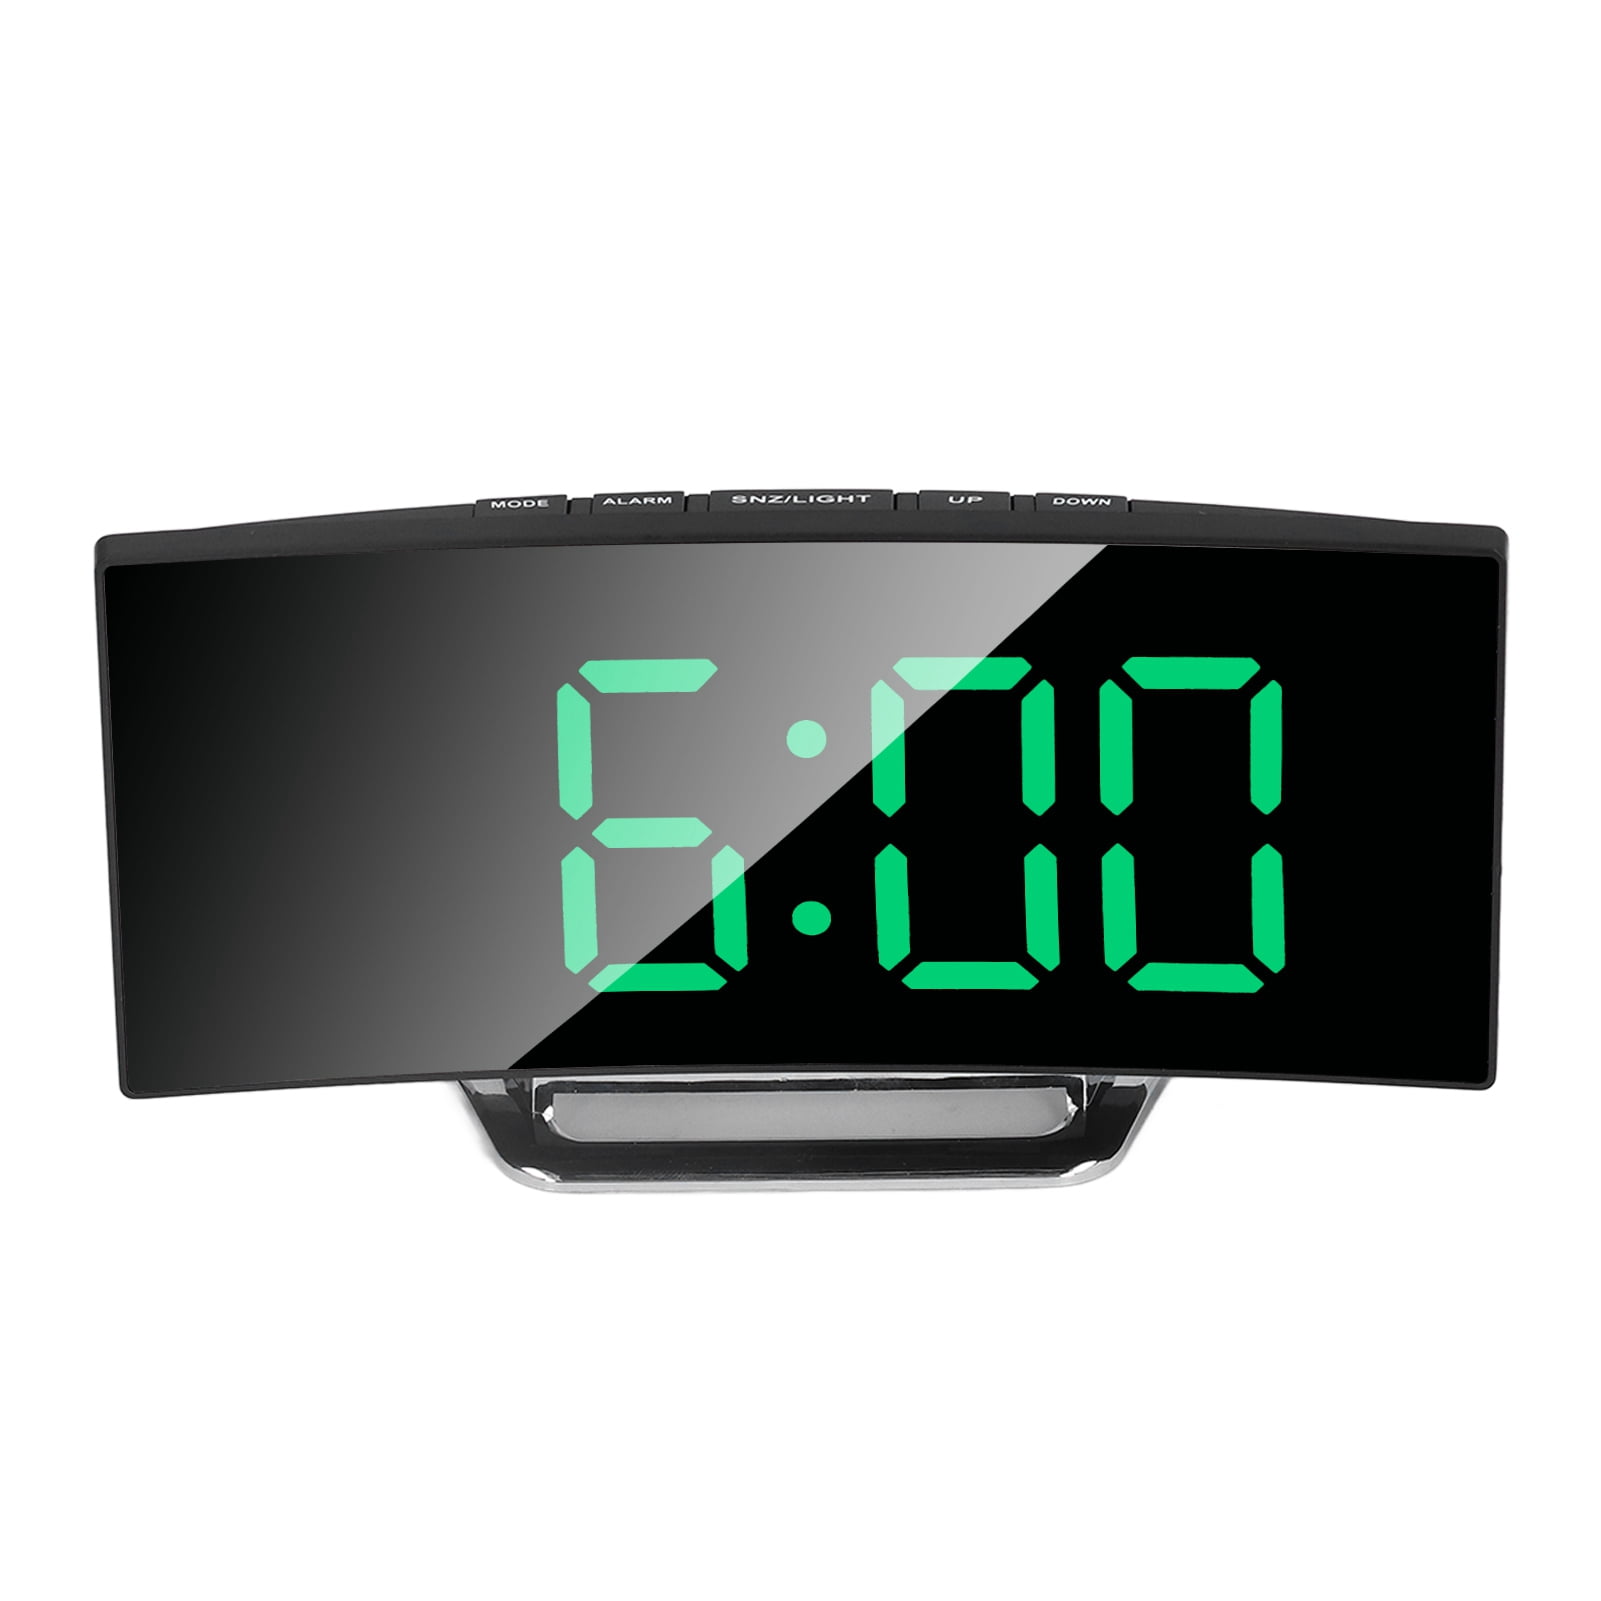 1 Bausatz LED Digital Uhr Clock Thermometer Light Kit DIY 4-Digit &Gehäuse Neu 